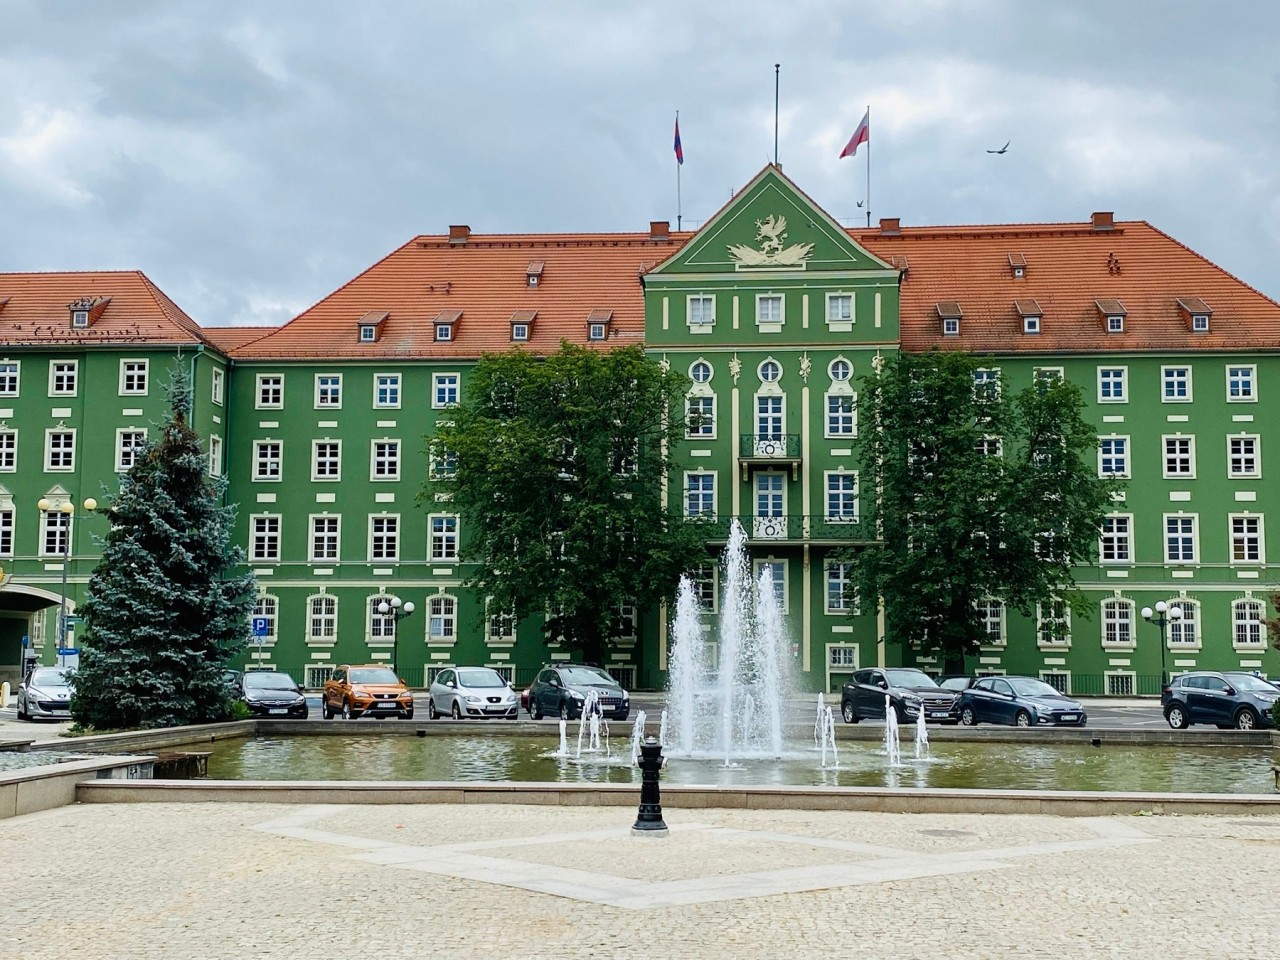 Das Gebäude der Stadtverwaltung - "Spinatpalast" genannt. 